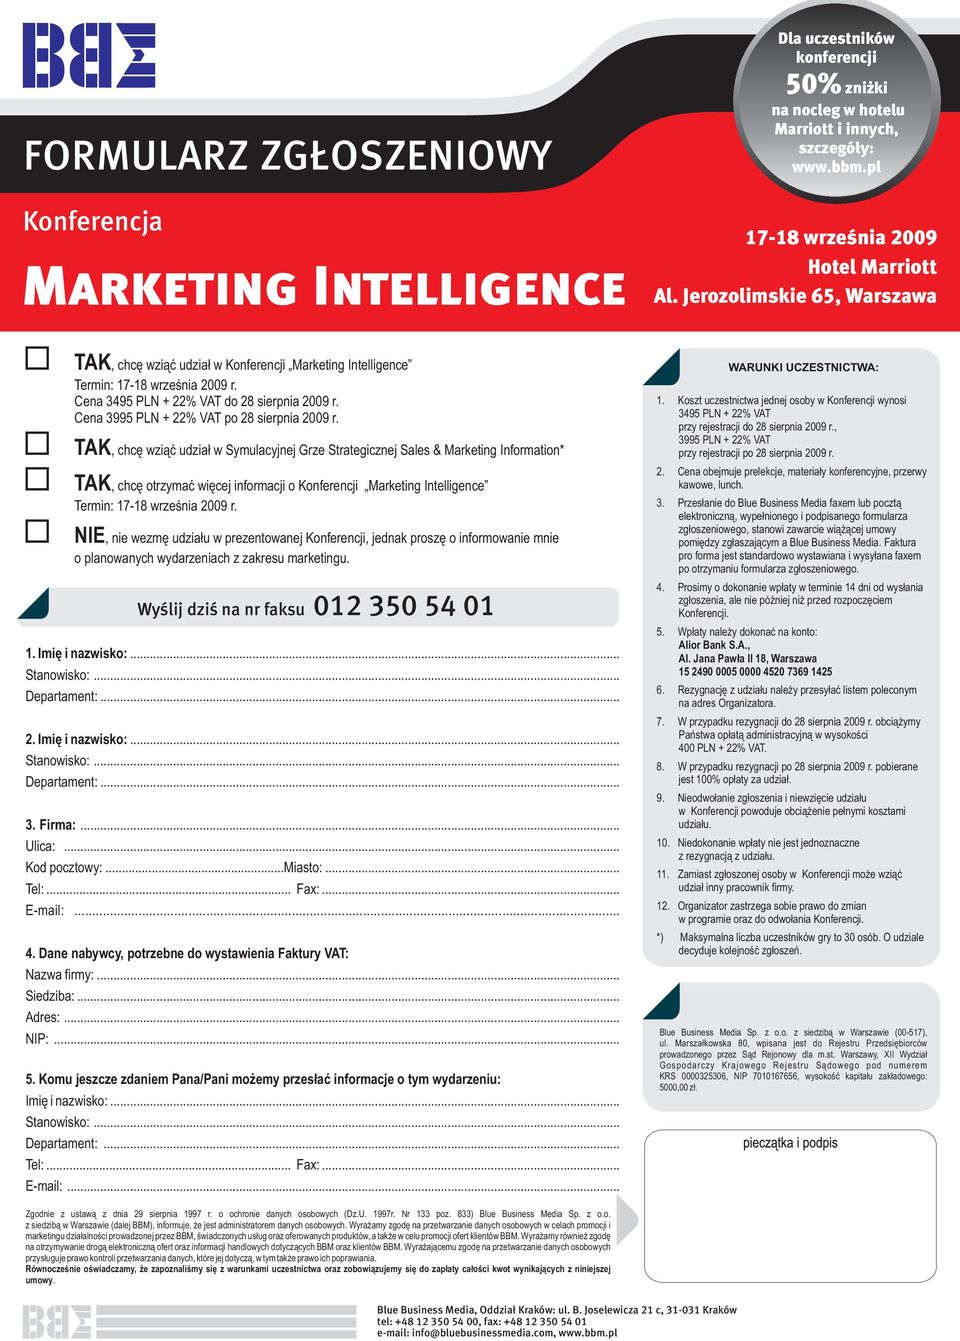 TAK, chcę wziąć udział w Symulacyjnej Grze Strategicznej Sales & Marketing Information* TAK, chcę otrzymać więcej informacji o Konferencji Marketing Intelligence Termin: 17-18 września 2009 r.